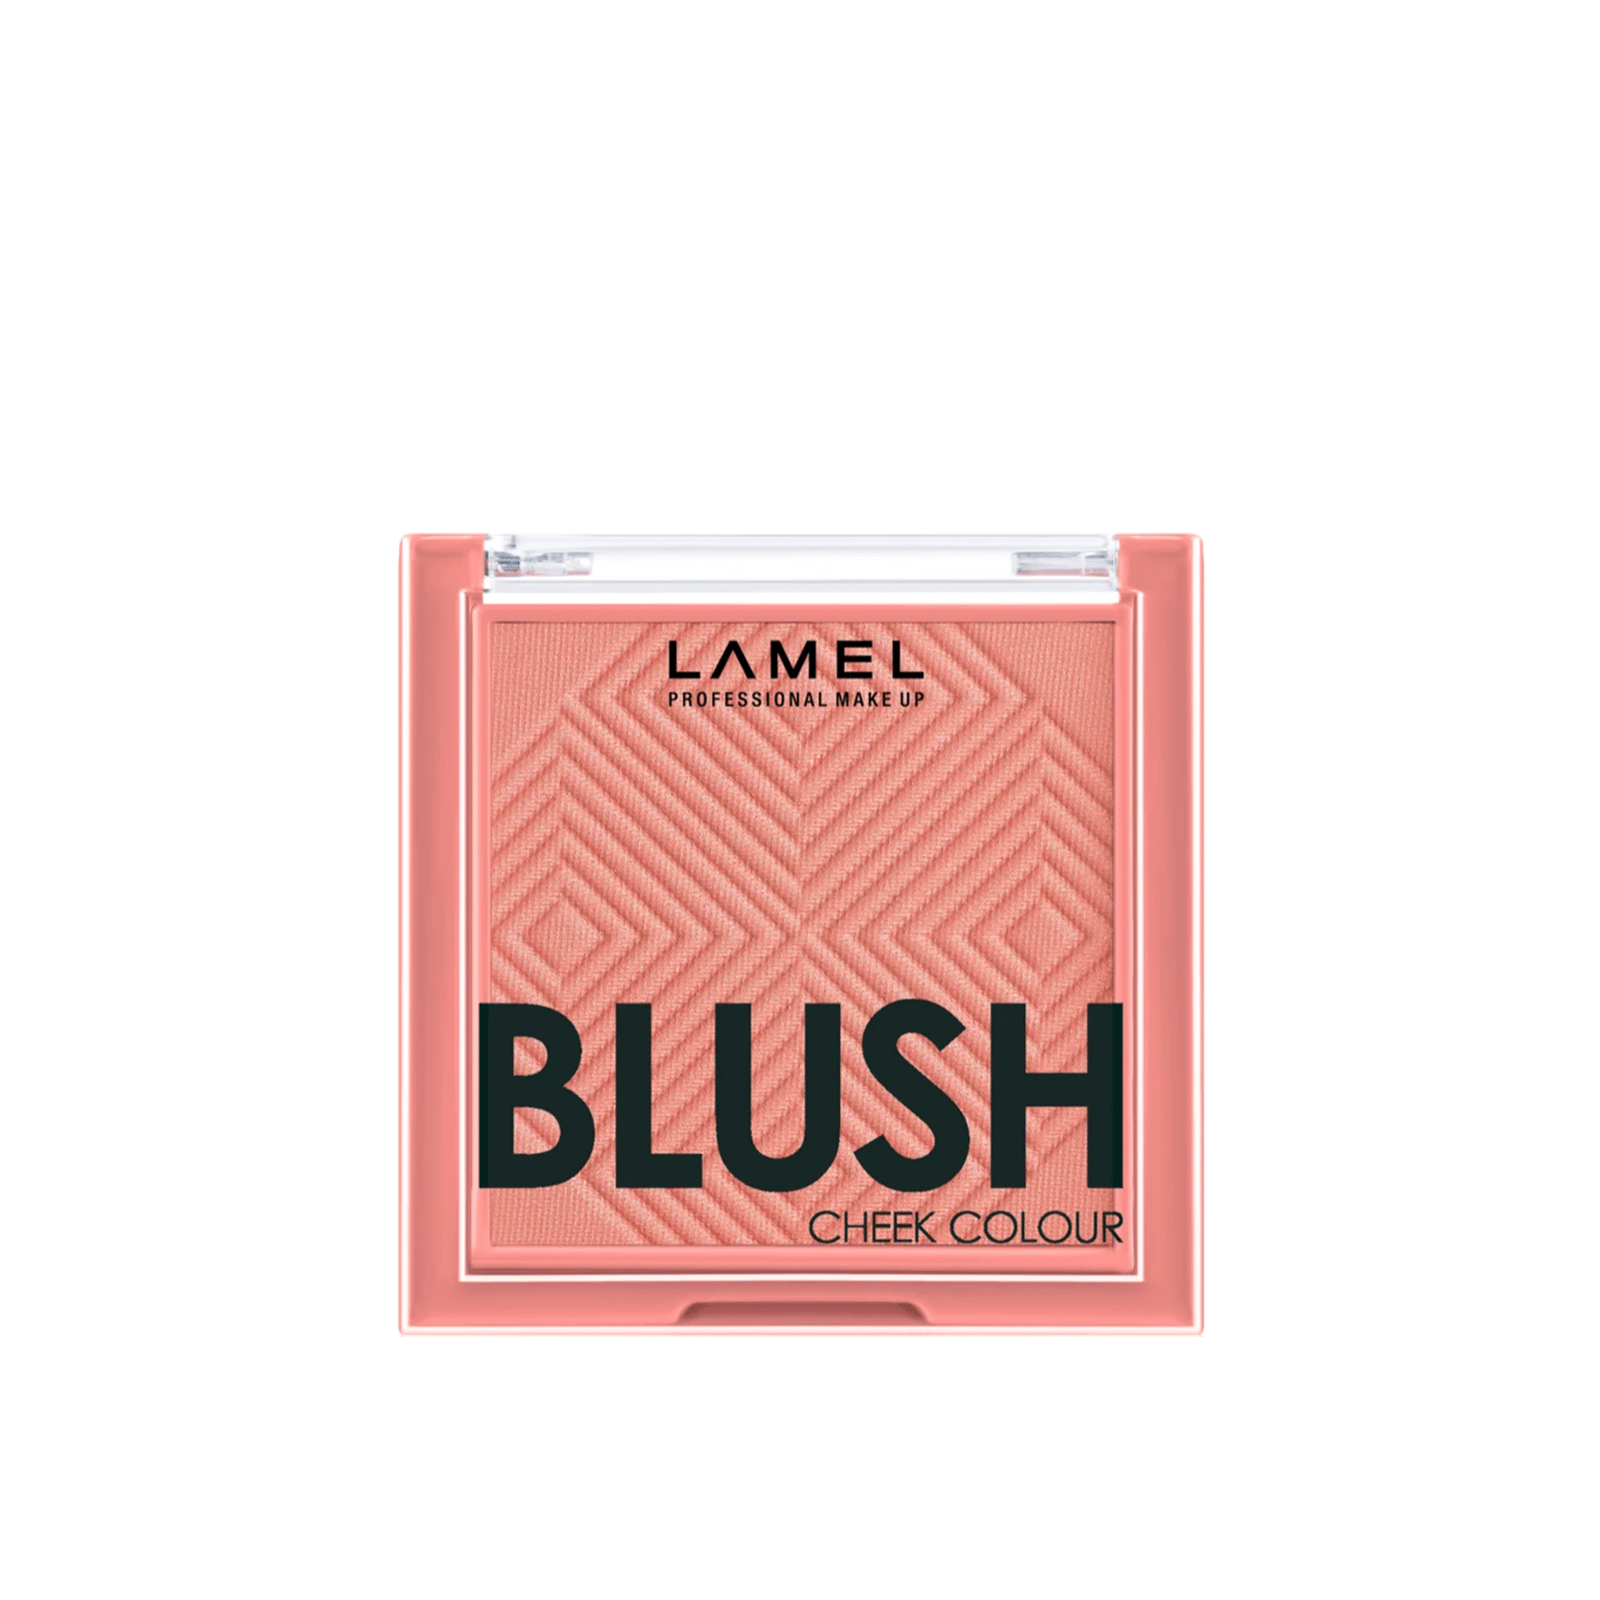 Lamel Blush Cheek Colour 403 Coral 3.8g (0.13oz)